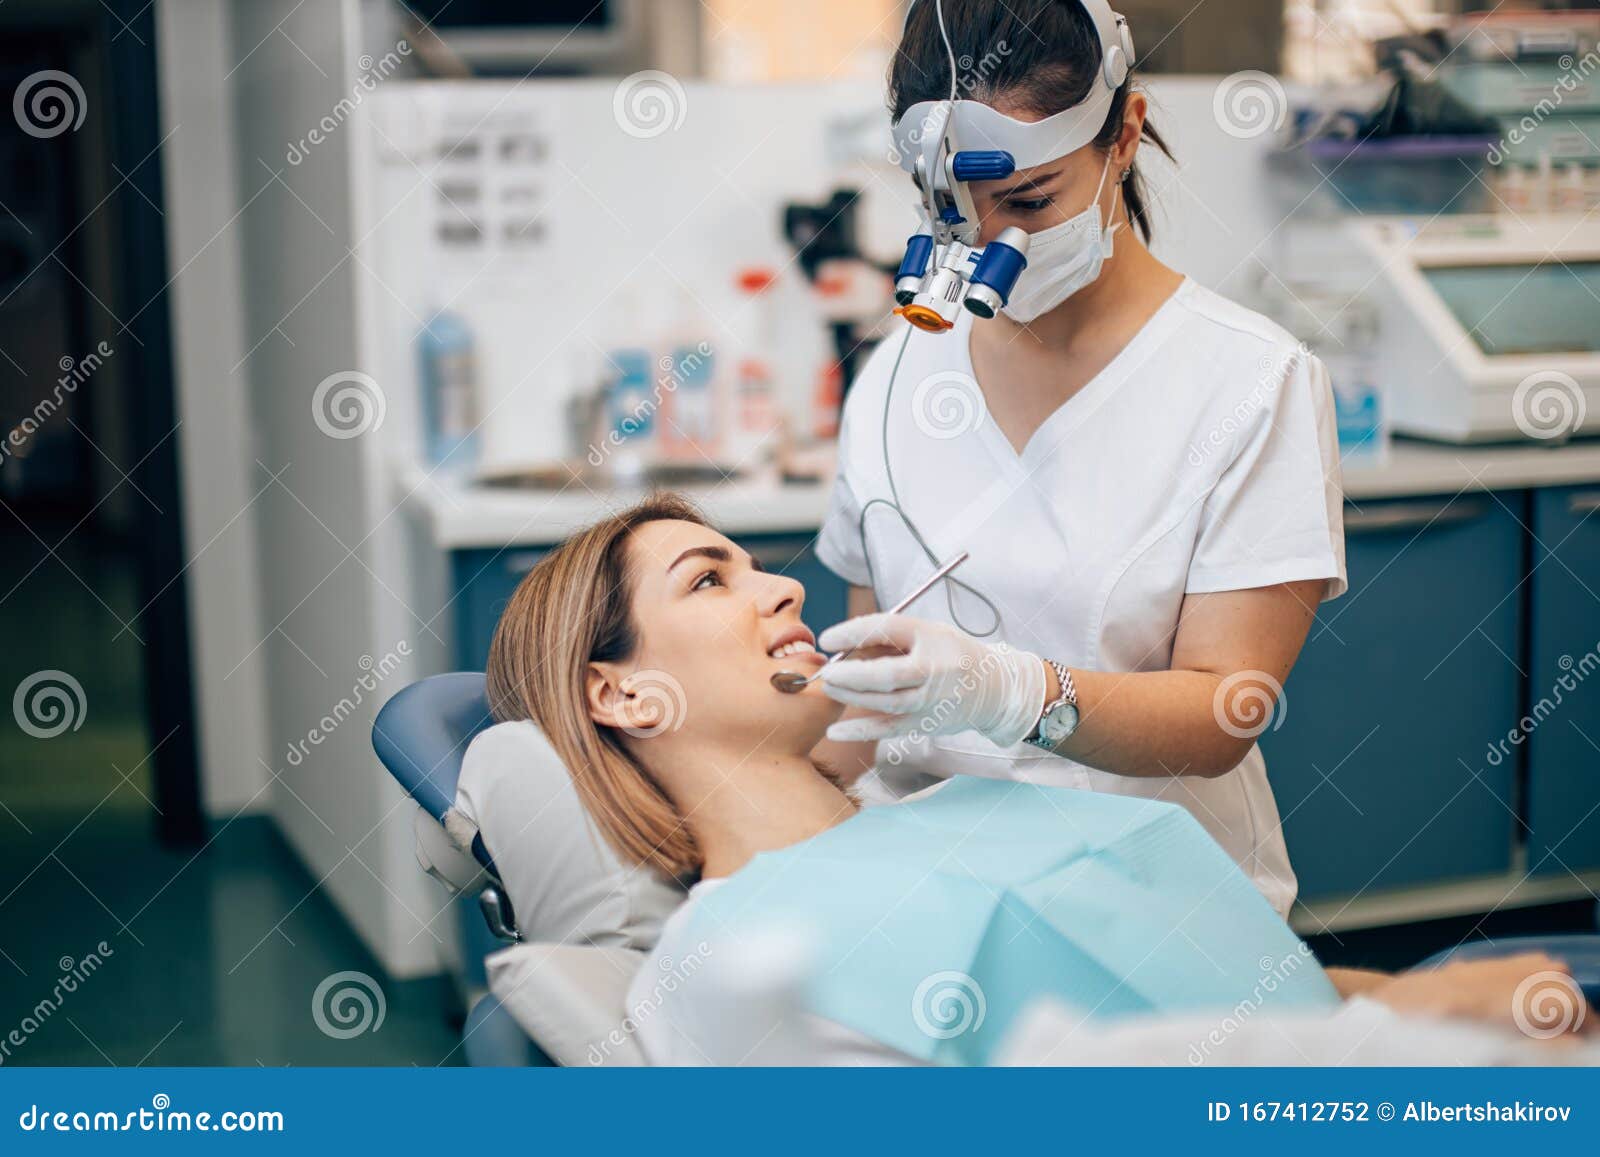 teeth doctor